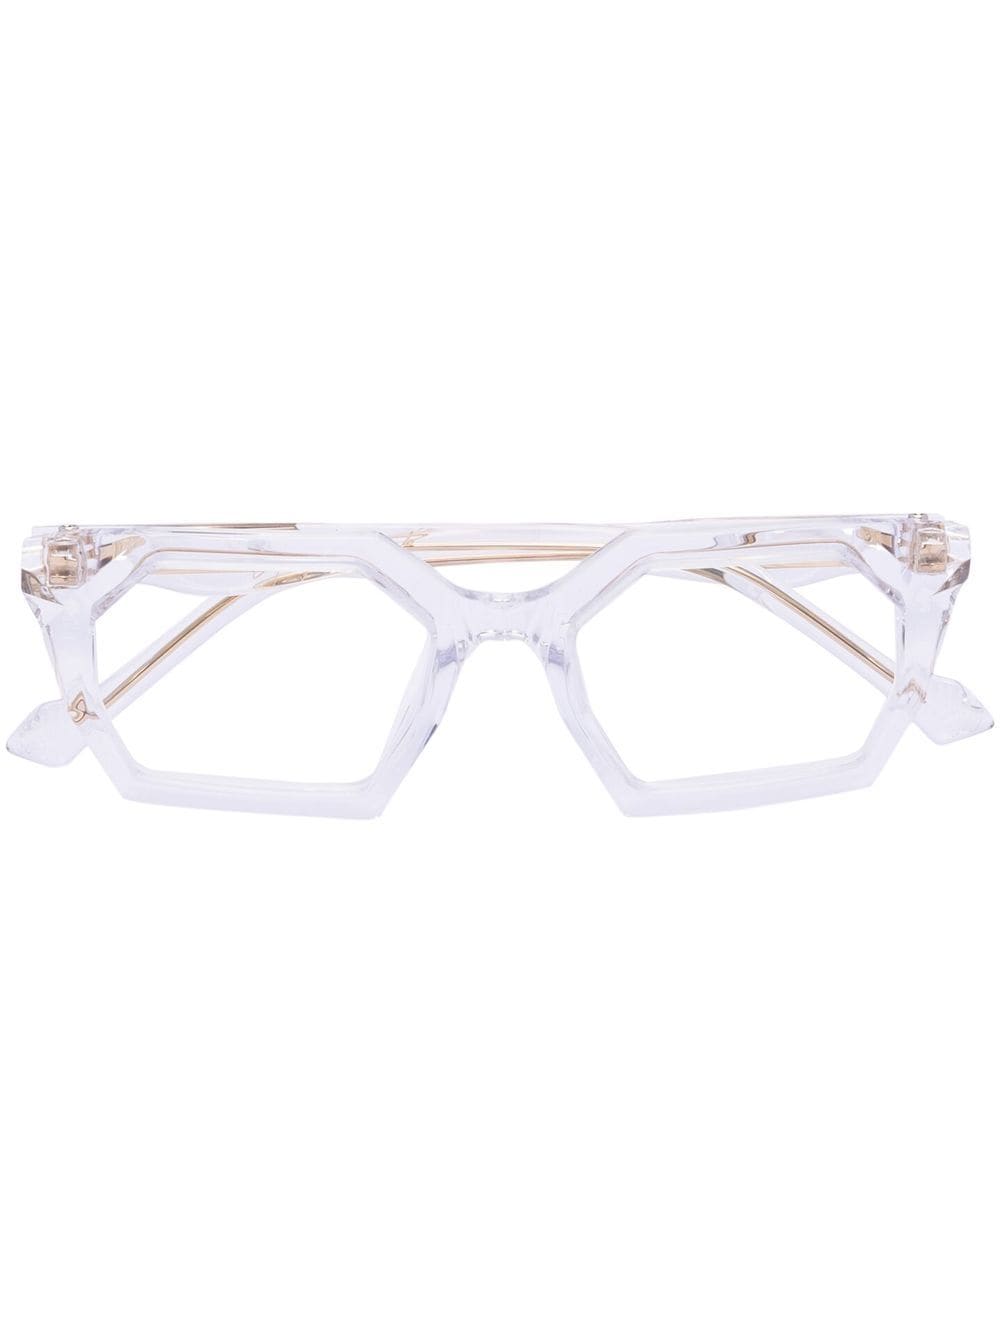 yohji yamamoto lunettes de vue géométriques à design transparent - blanc